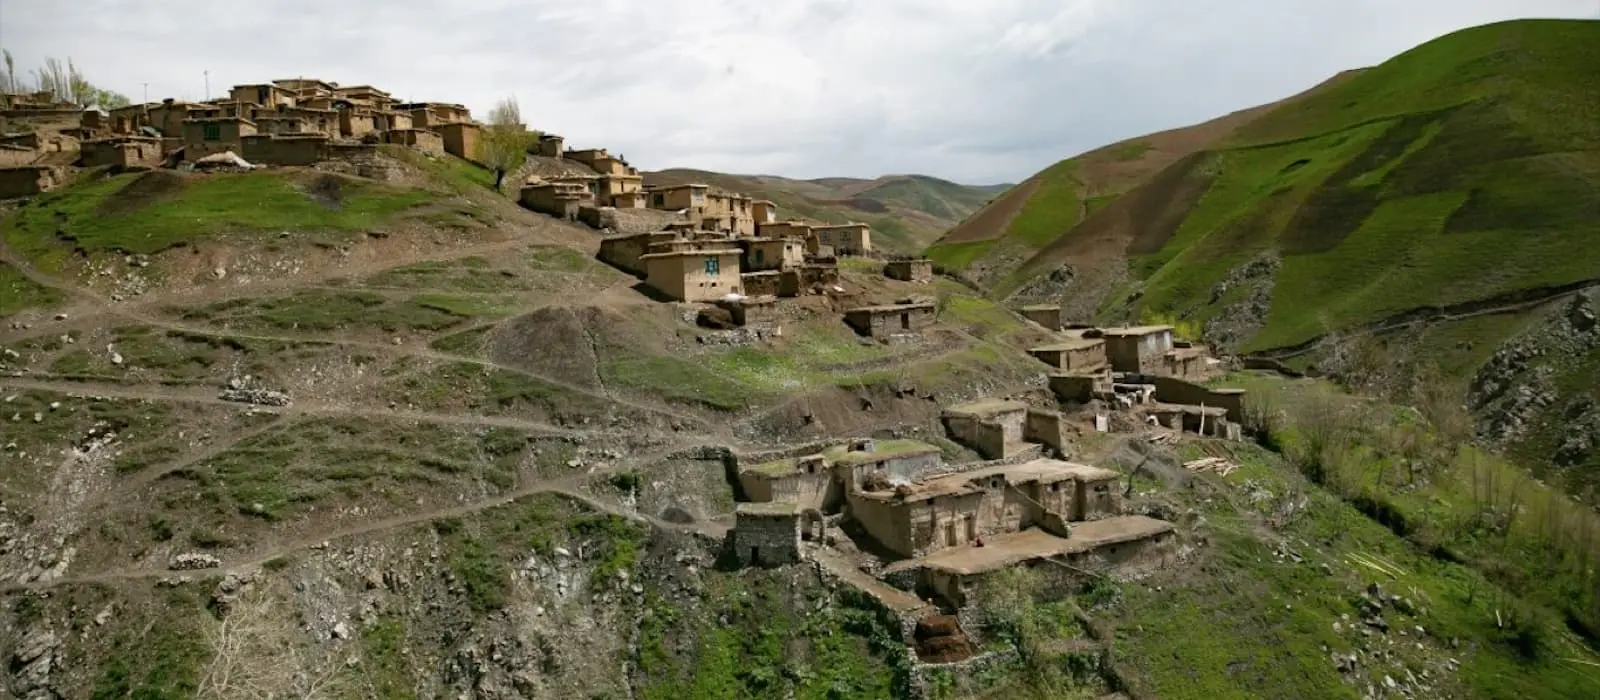 Landscape of Afghanistan